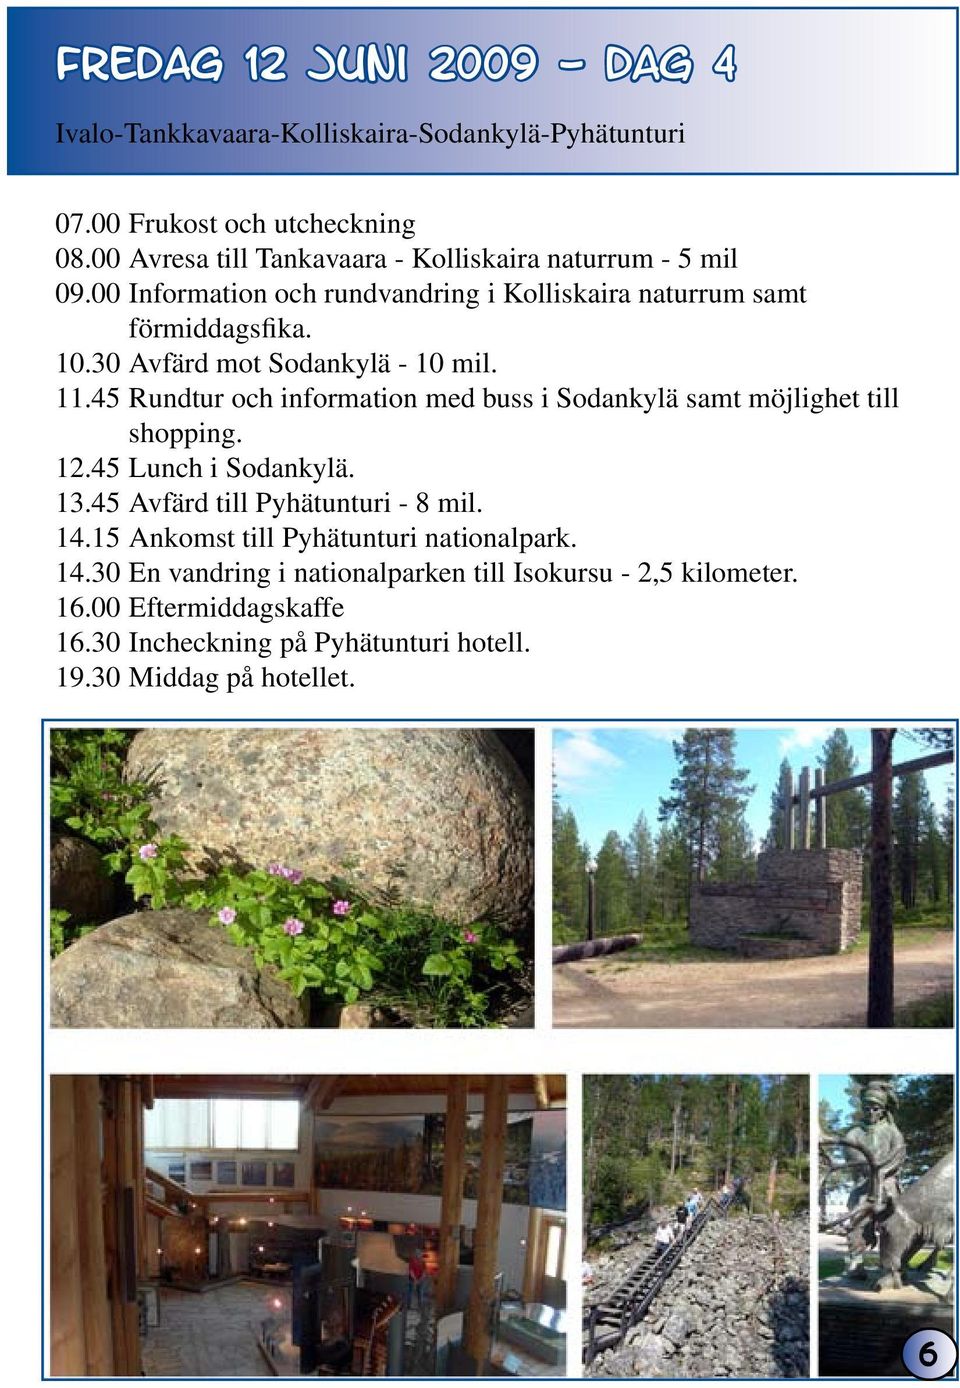 30 Avfärd mot Sodankylä - 10 mil. 11.45 Rundtur och information med buss i Sodankylä samt möjlighet till shopping. 12.45 Lunch i Sodankylä. 13.